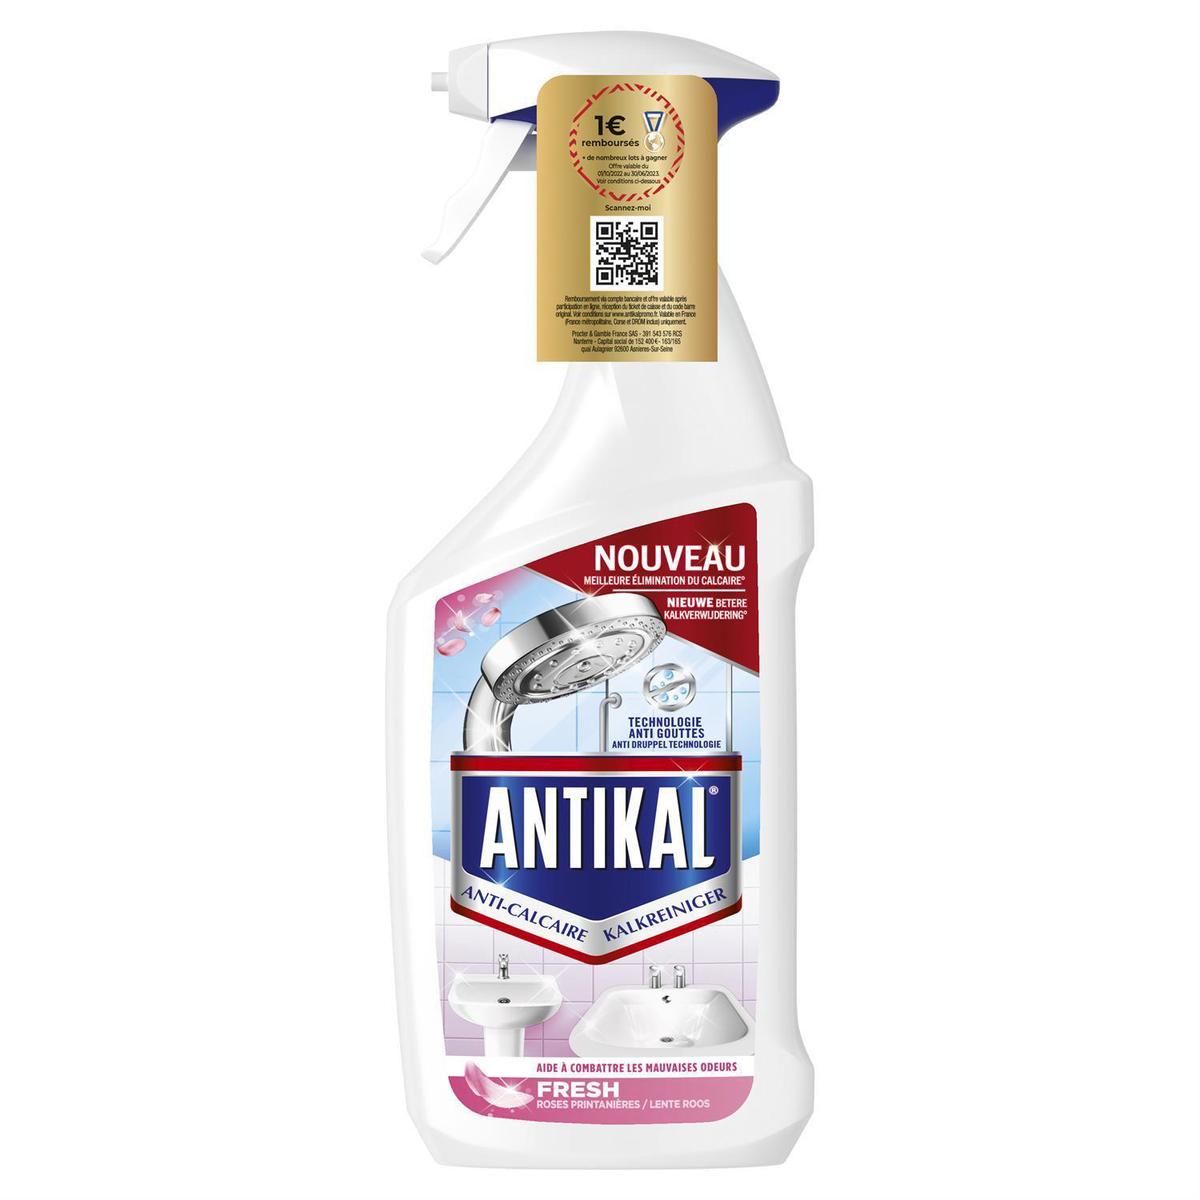 Spray nettoyant vinaigre anticalcaire Antikal - 500ml